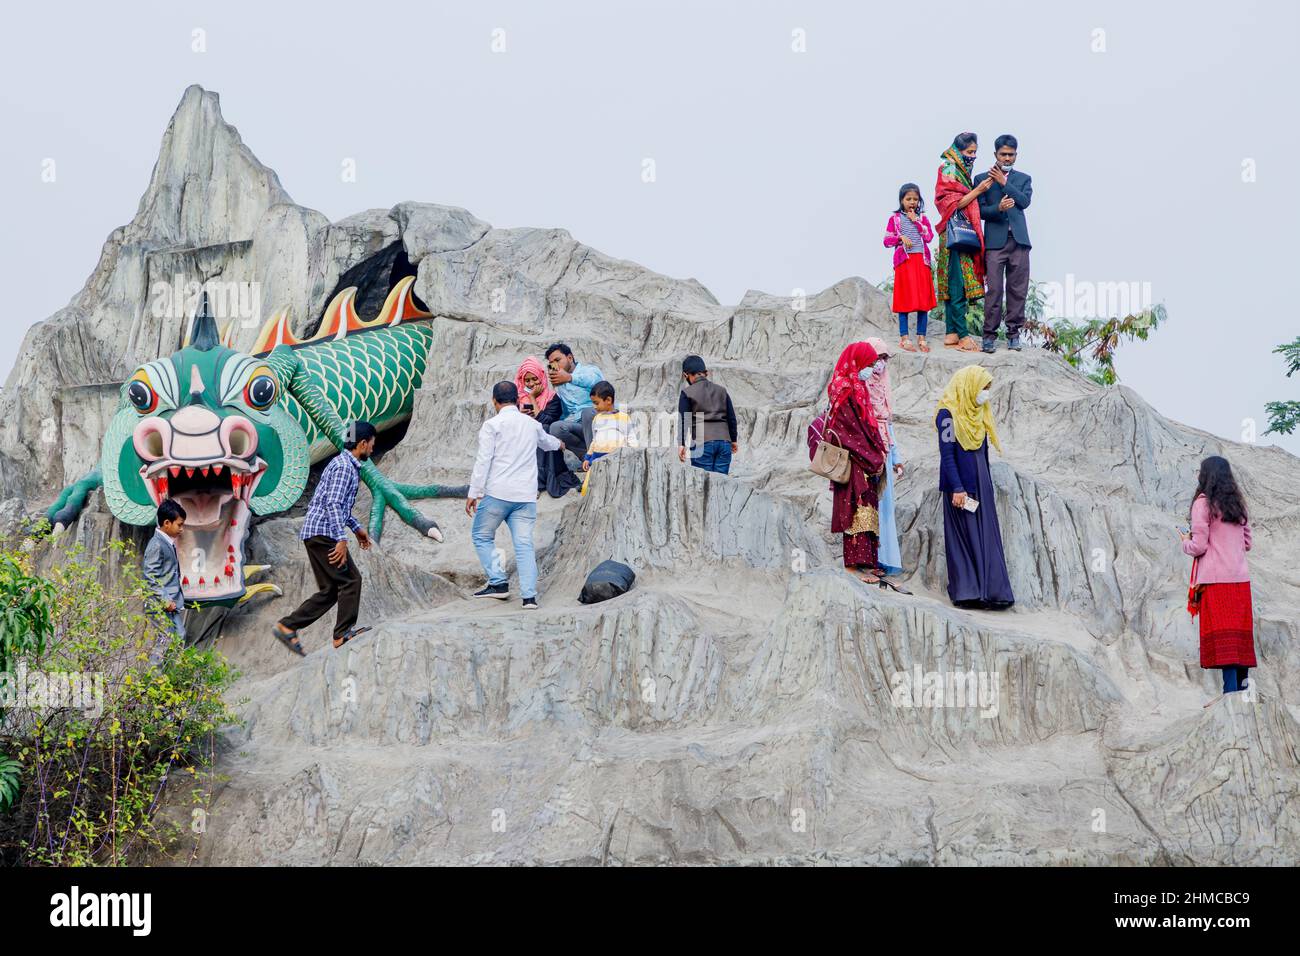 Los residentes de Dhaka están disfrutando de tiempo libre después de la oración del viernes en el parque de atracciones DNCC Wonderland, conocido localmente como Shisu Mela, en Dhaka. Con las omnipresentes amenazas COVID, el pueblo de Dhaka está buscando un respiro dondequiera que pueda. Foto de stock